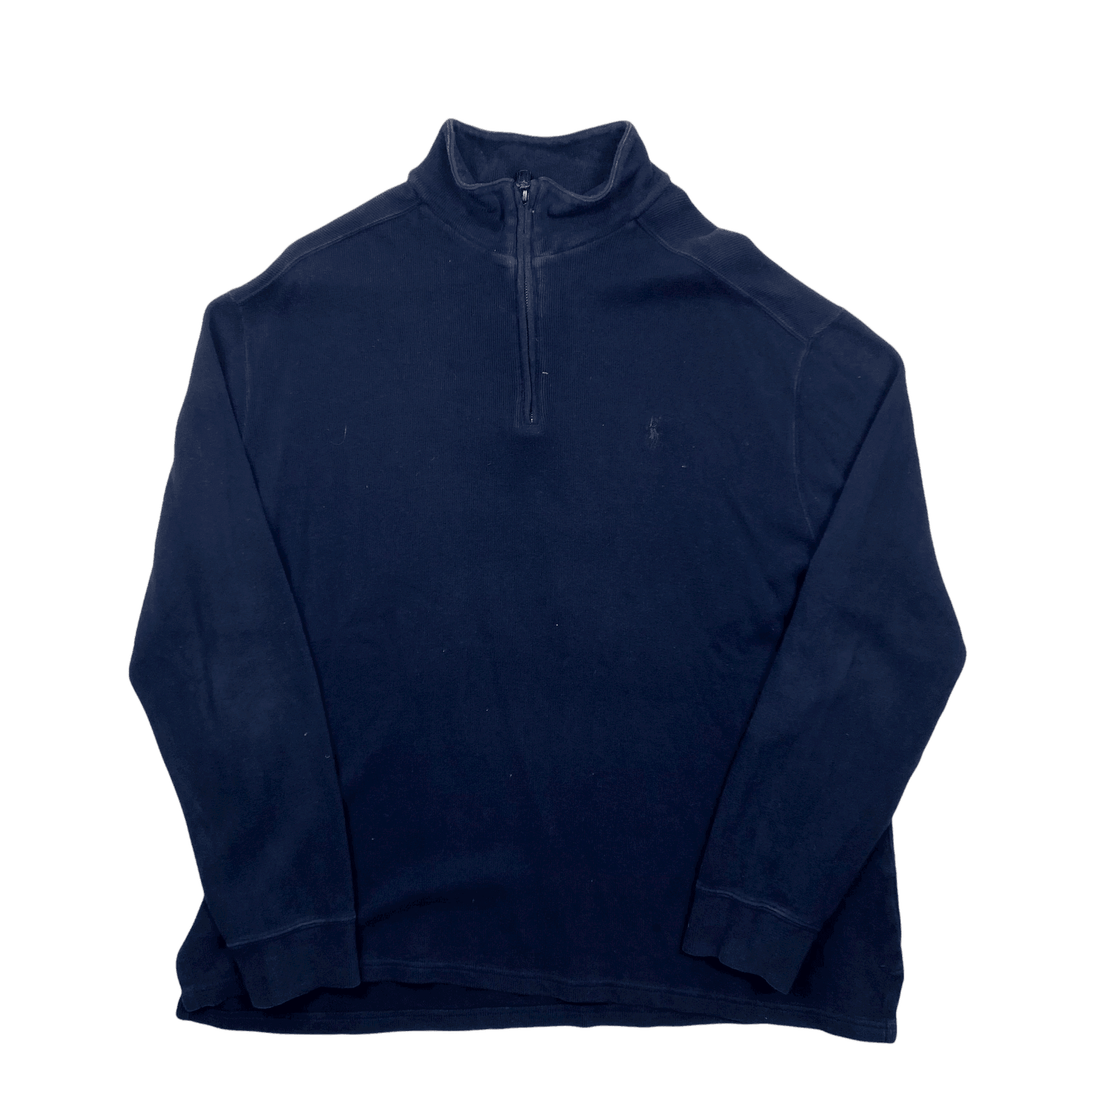 Vintage 90s Navy Blue Polo Ralph Lauren Quarter Zip Sweatshirt - Extra Large - The Streetwear Studio